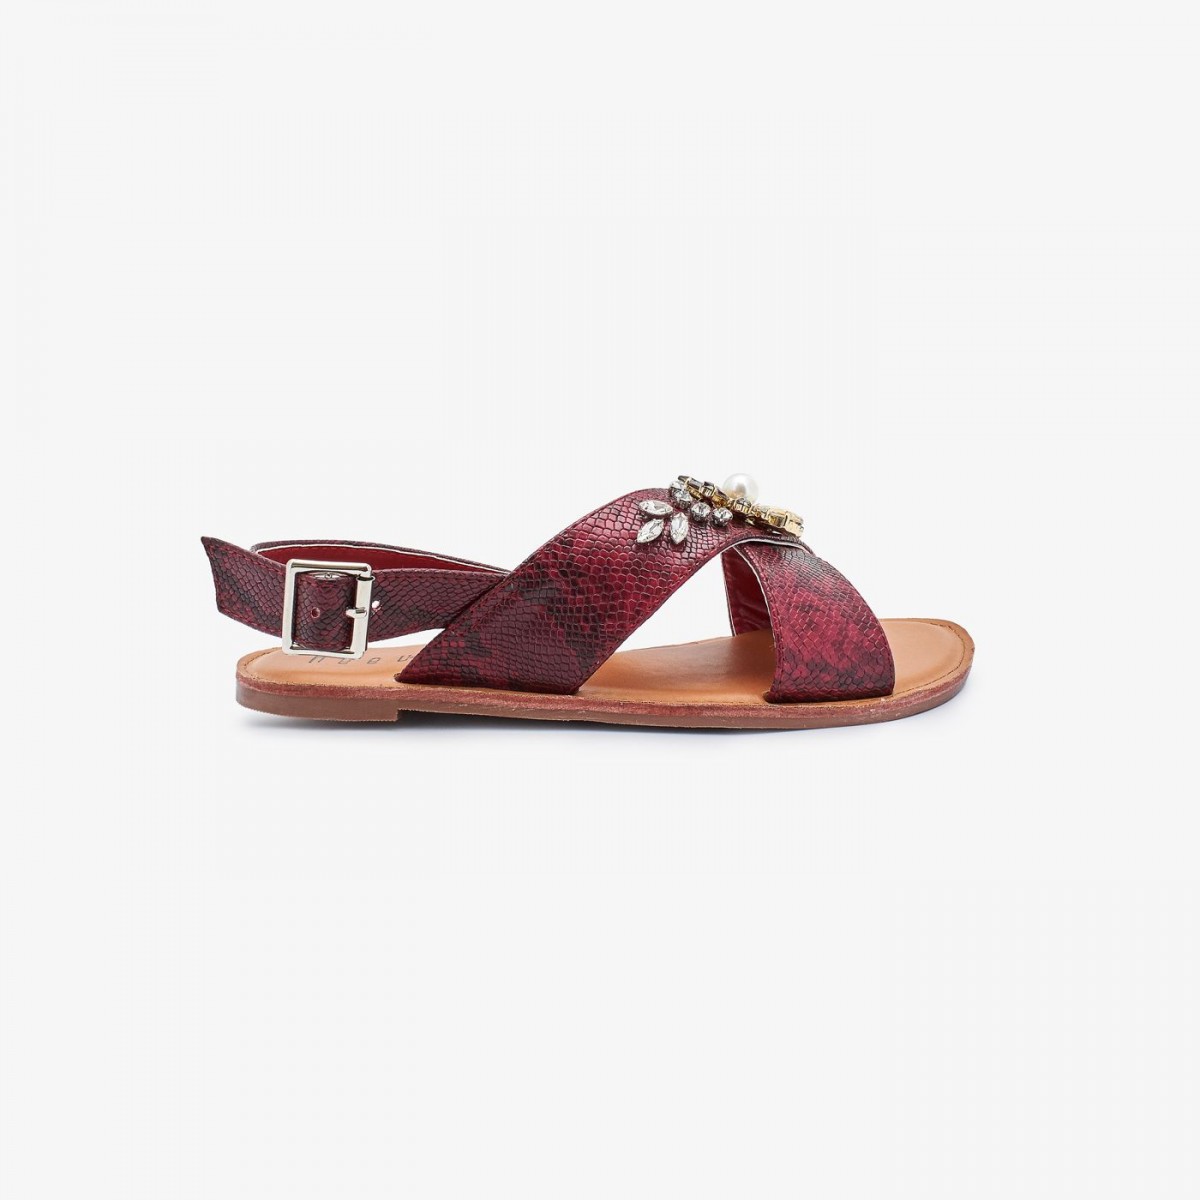 /2019/08/reeva-ladies-fancy-sandals-rv-sd-0471-maroon-image2.jpeg